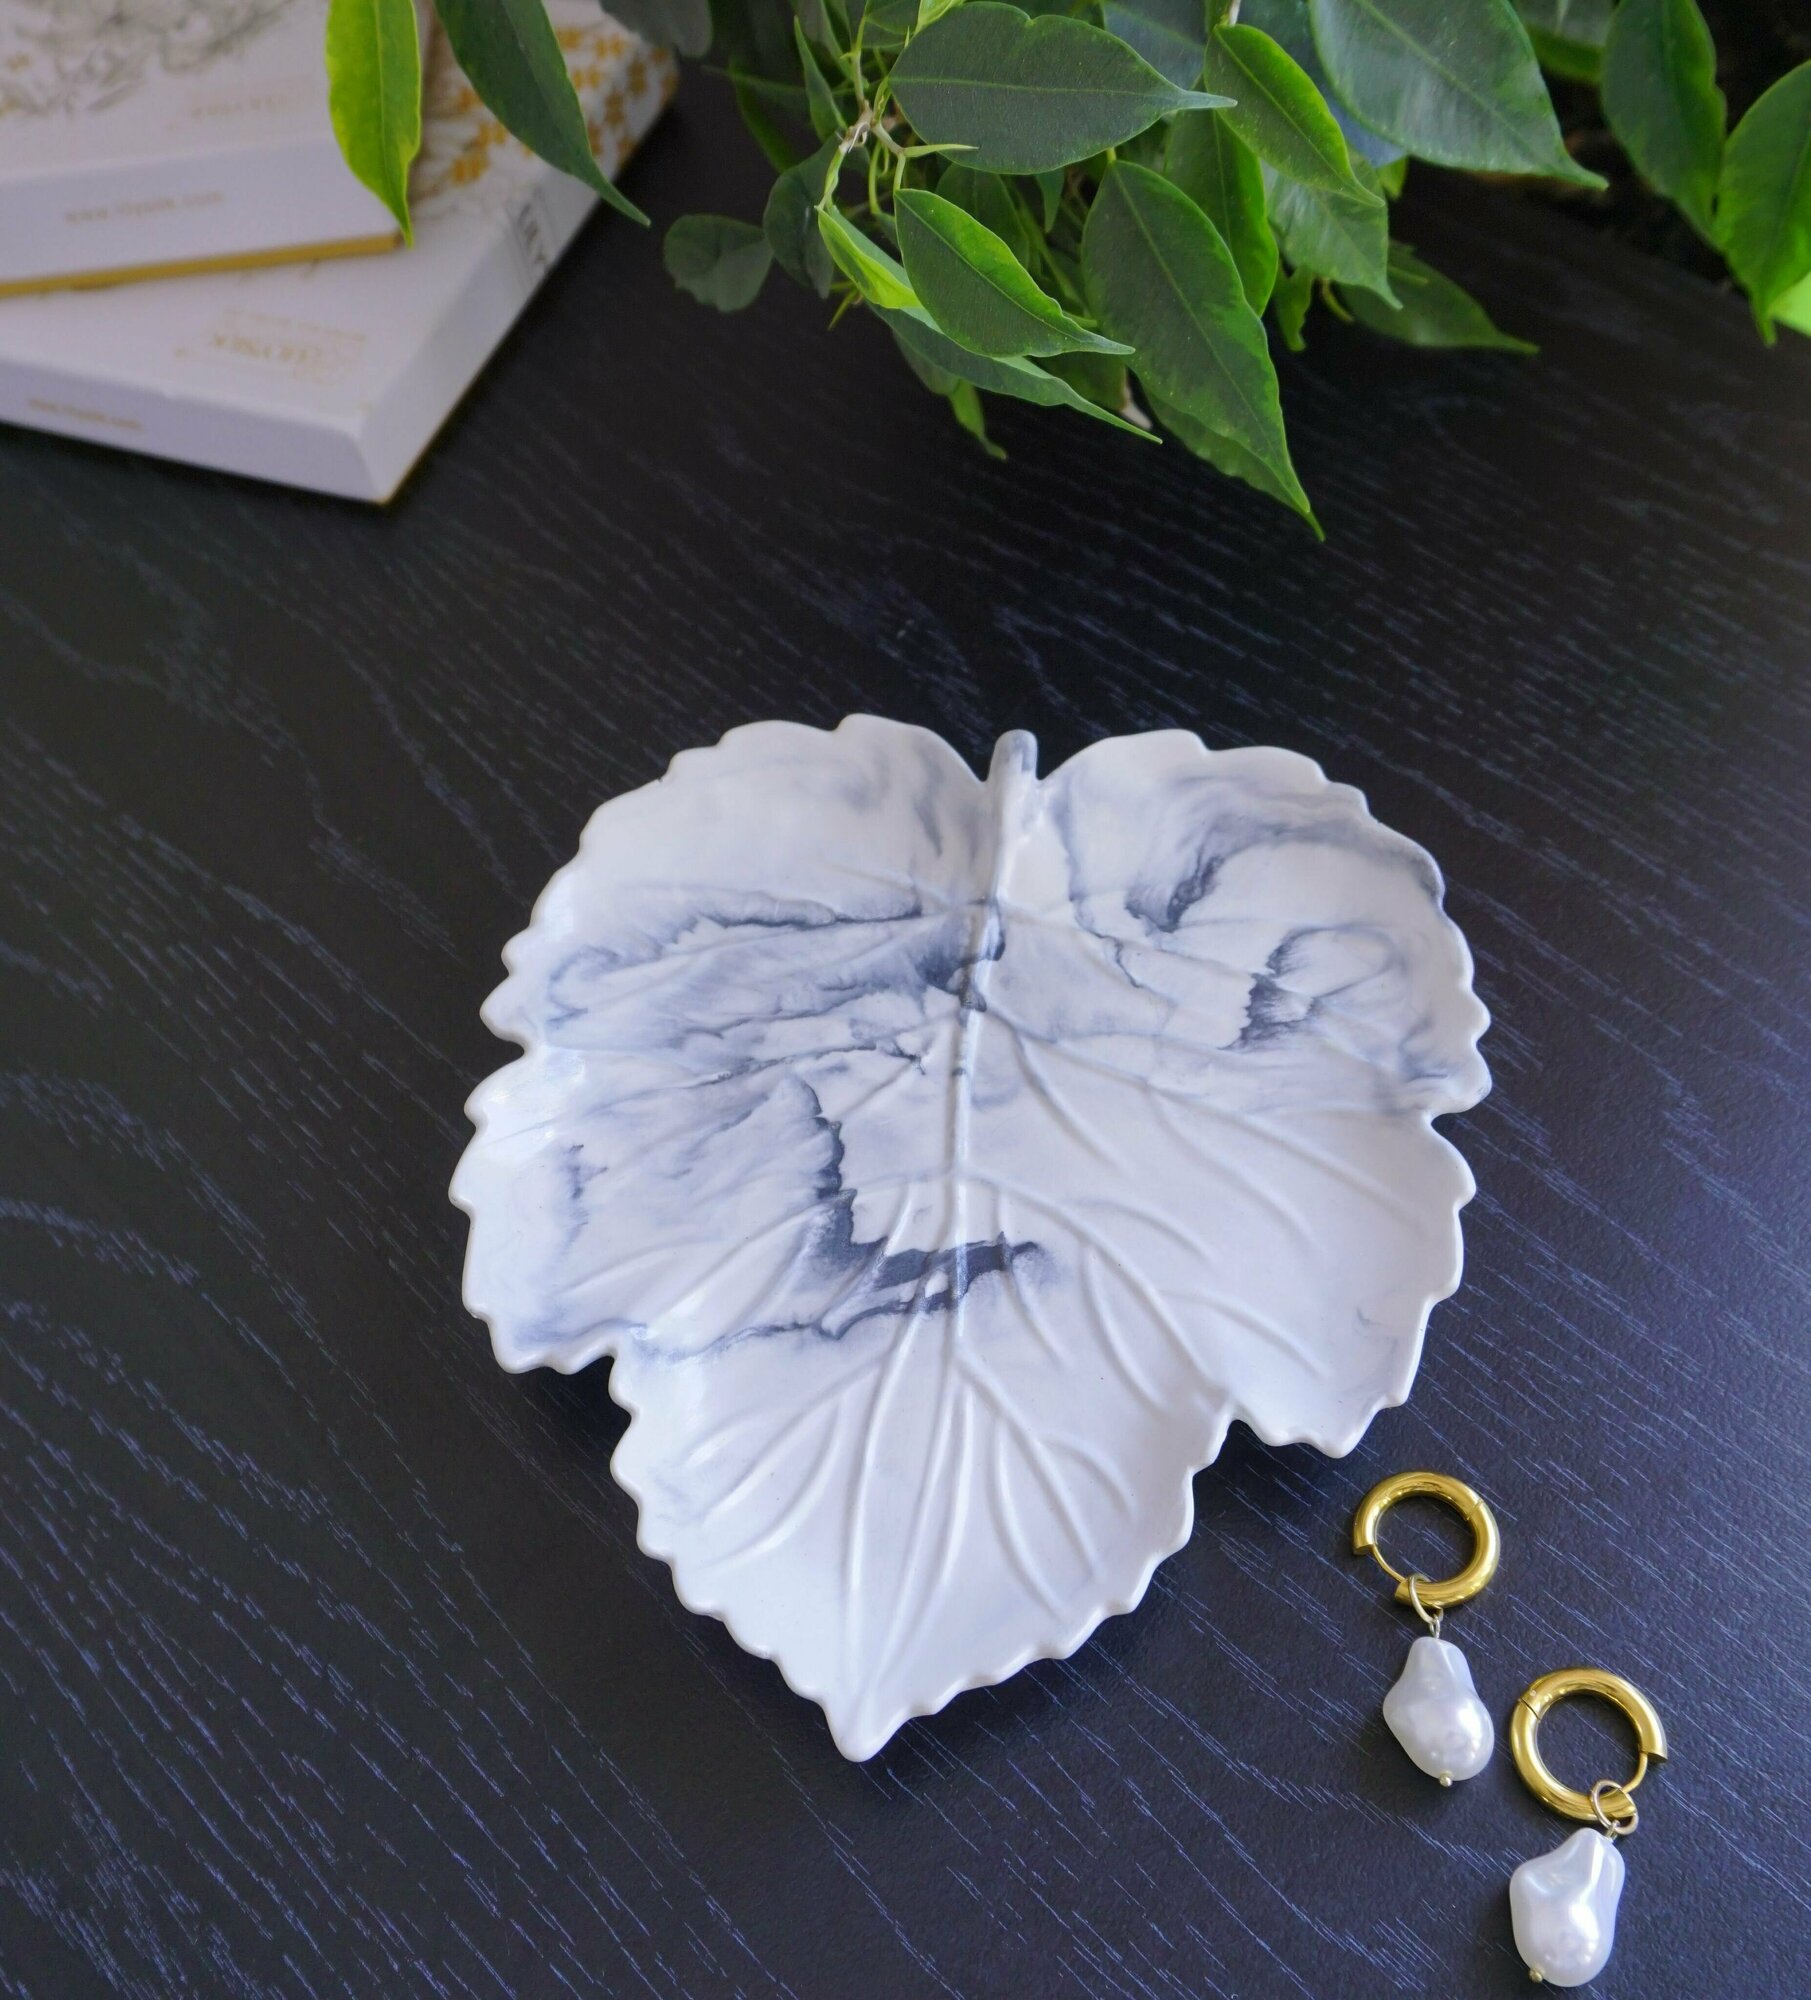 Тарелка " Кленовый лист" декоративная интерьерная с мраморным рисунком, ручной работы